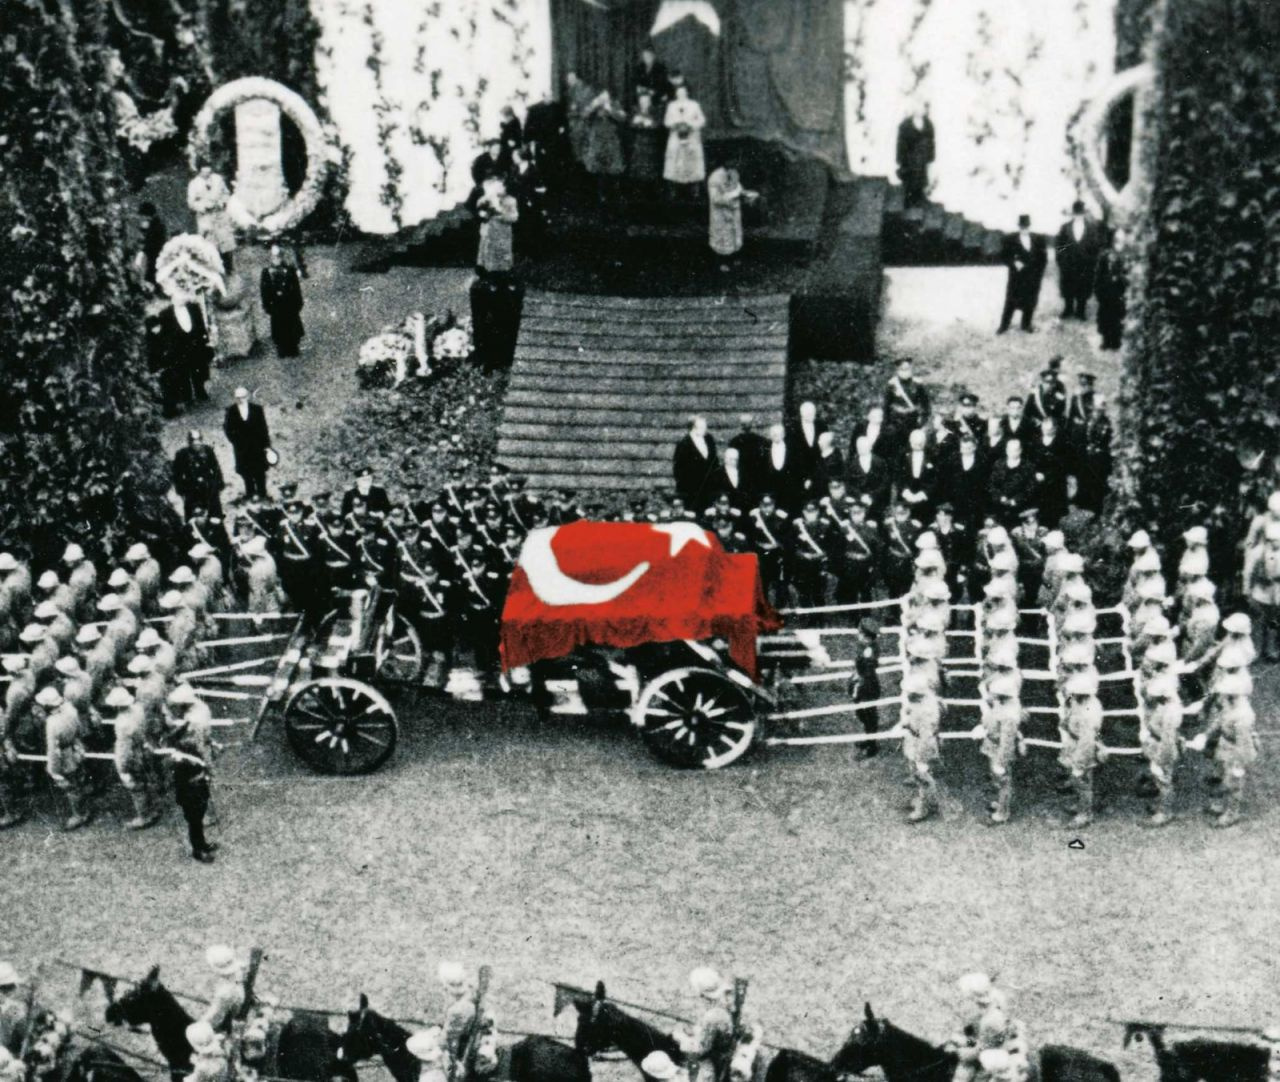 Ulu Önder Atatürk'ü vefatının 85. yılı! Acı haber Resmi Gazete'de böyle duyurulmuştu